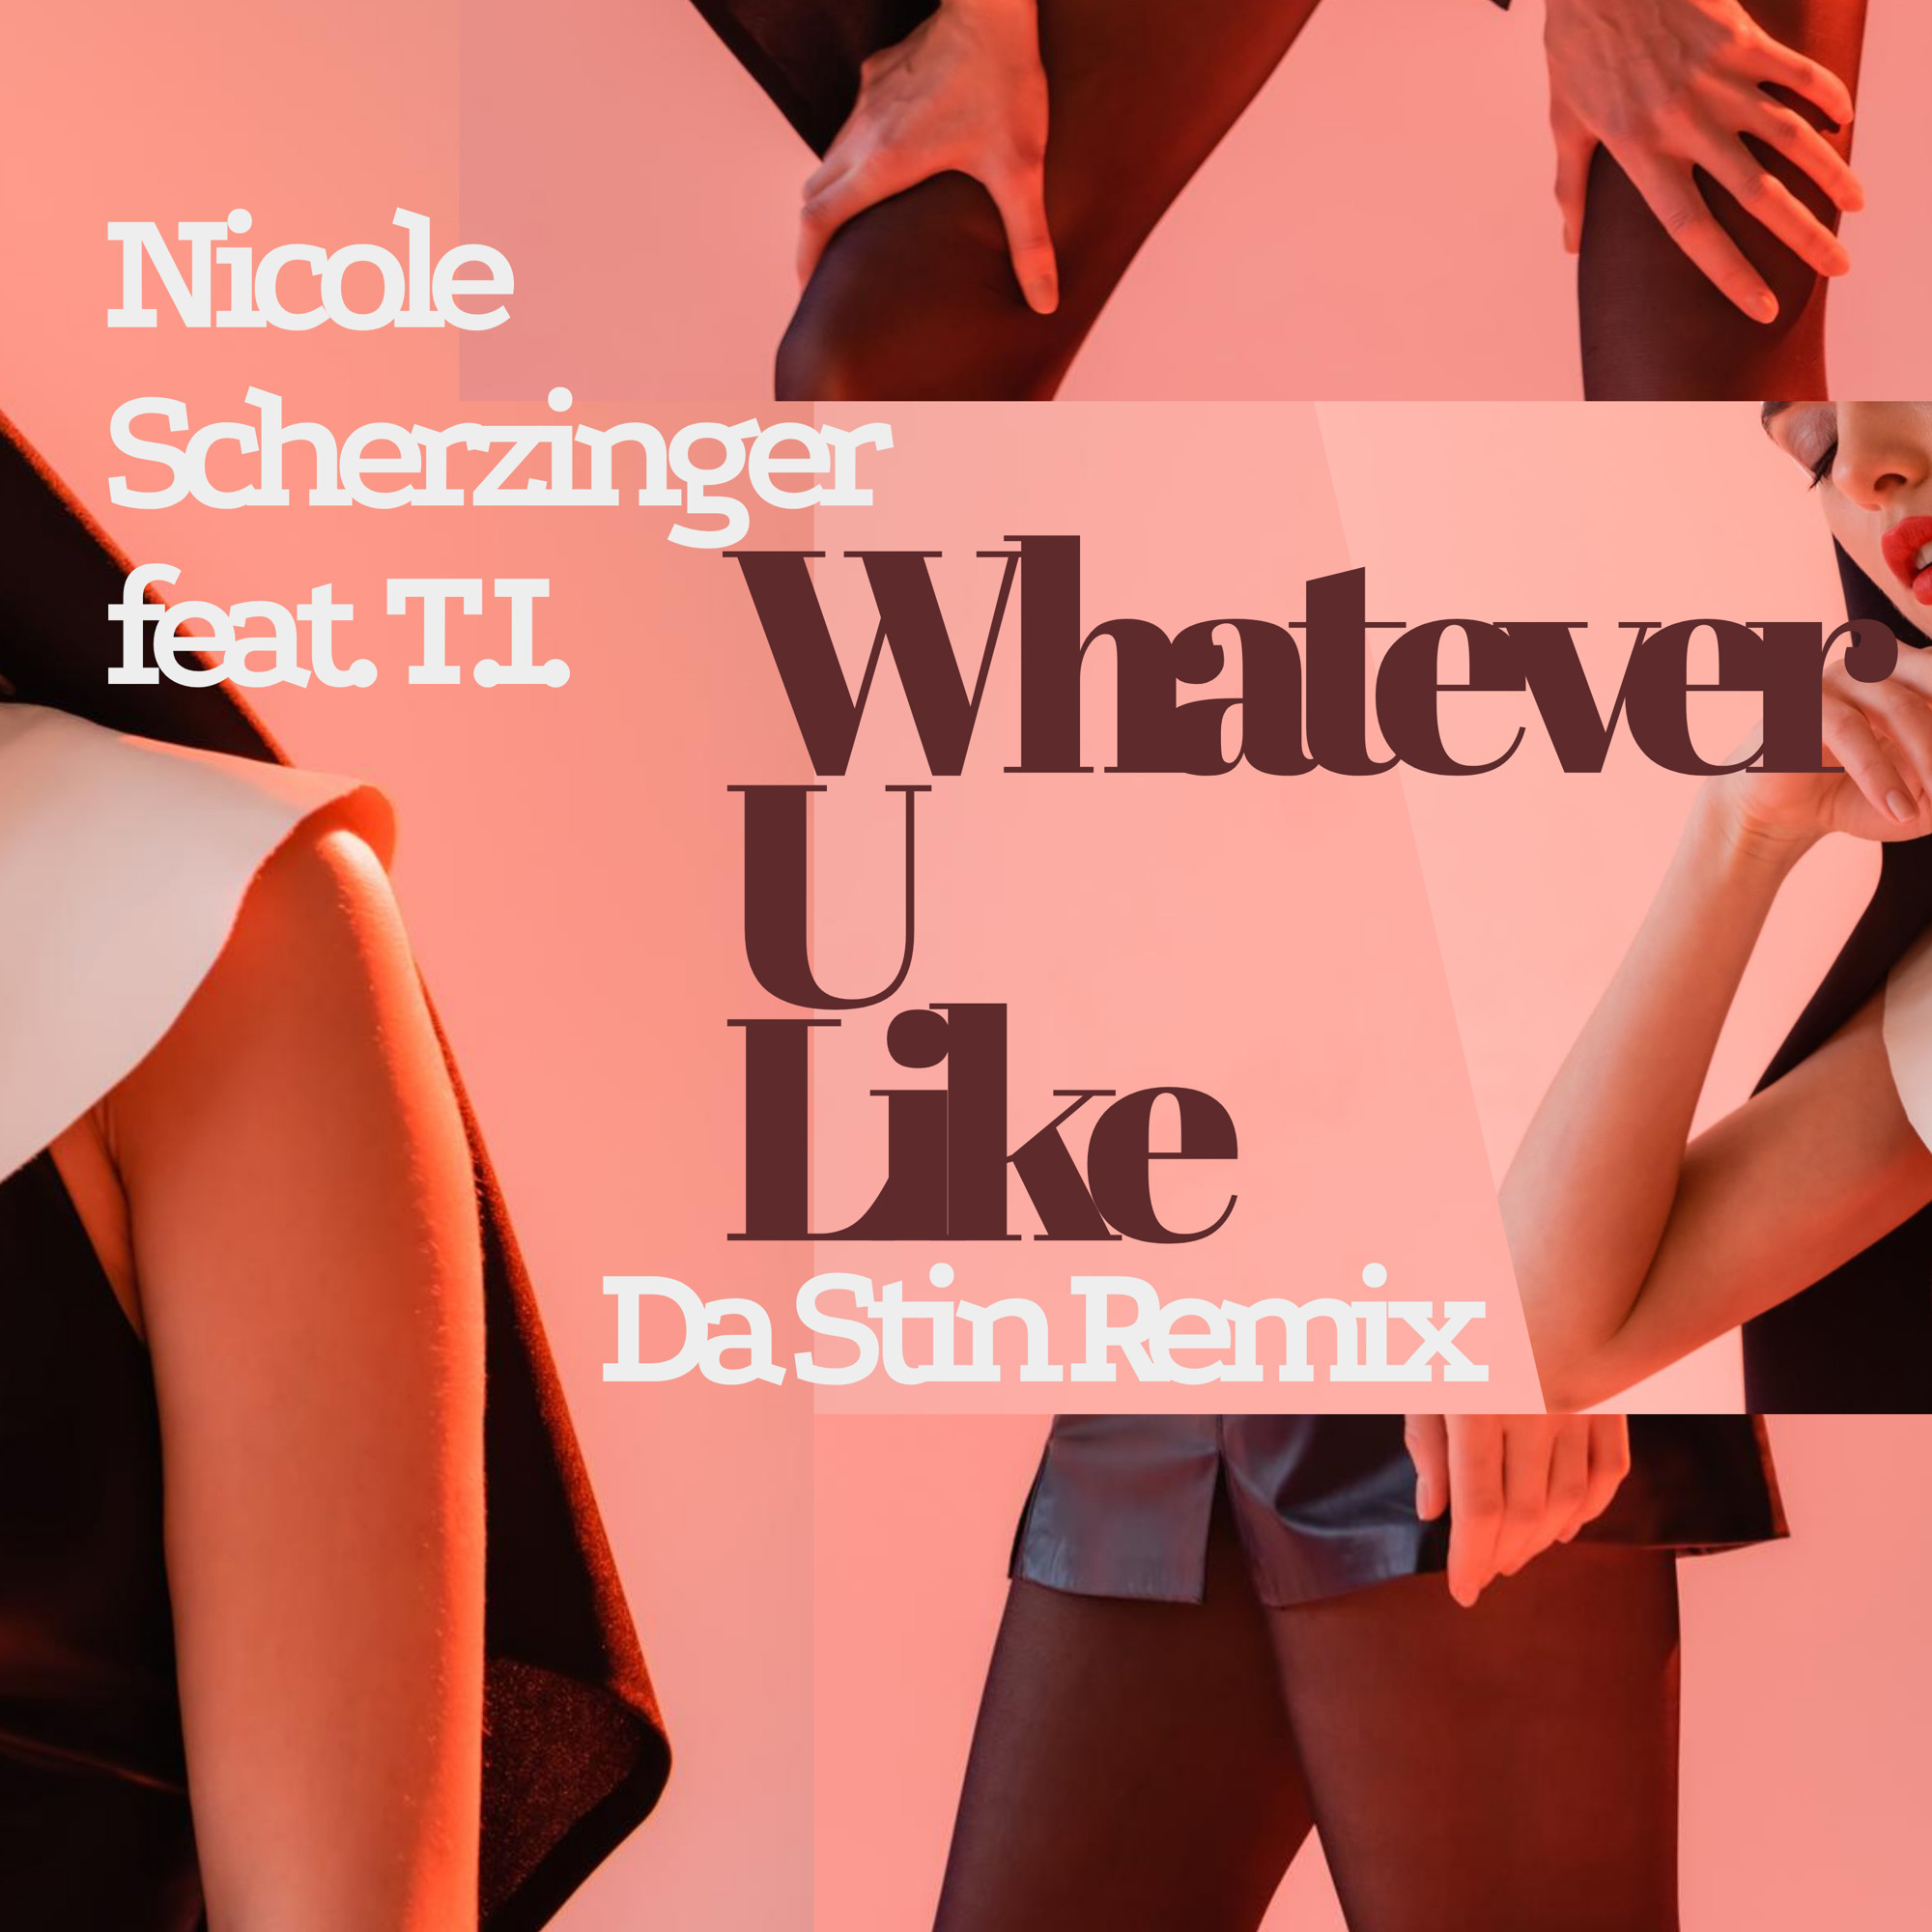 Whatever u like. Nicole Sherzinger feat. T.I. - whatever u like. Du hast(DJ smell RMX).